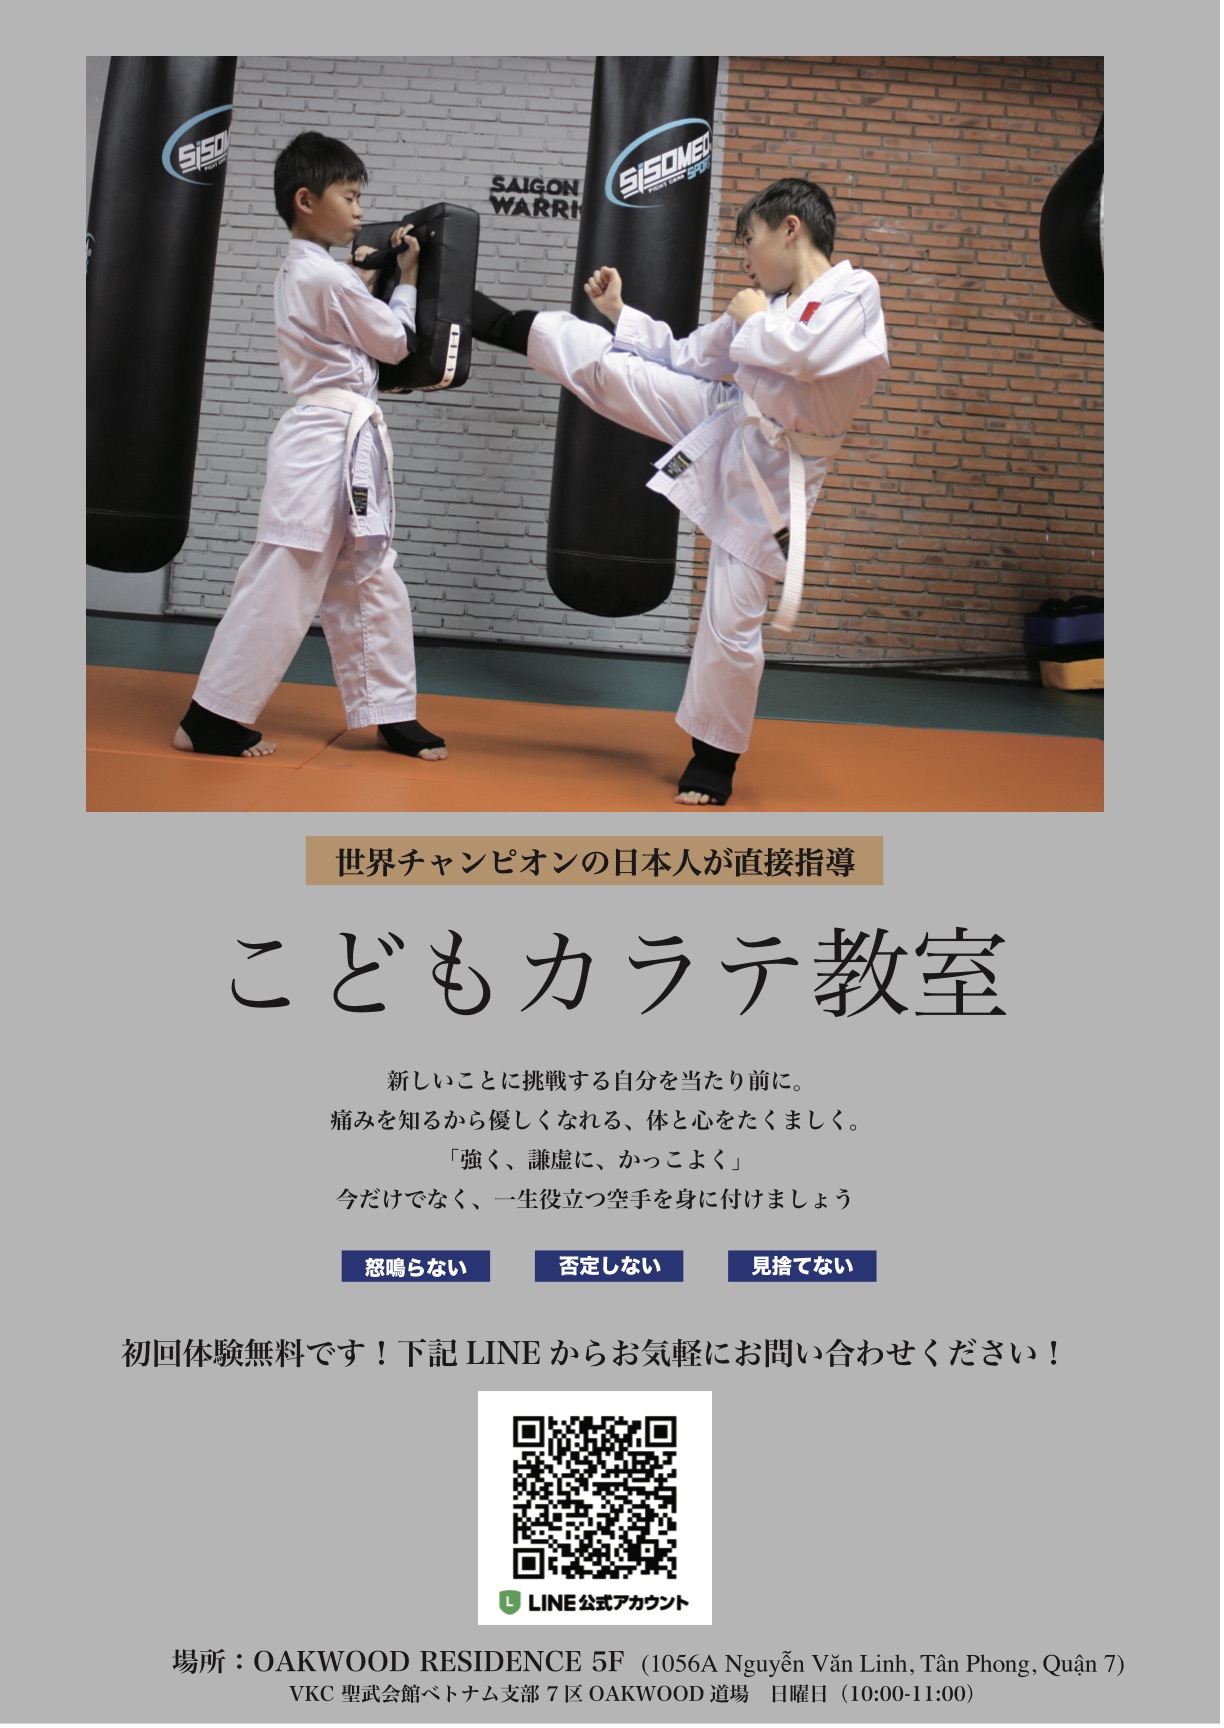 日本人現役世界チャンピオンによるキッズ空手教室 ホーチミン7区にオープン 日系 Vietjoベトナムニュース